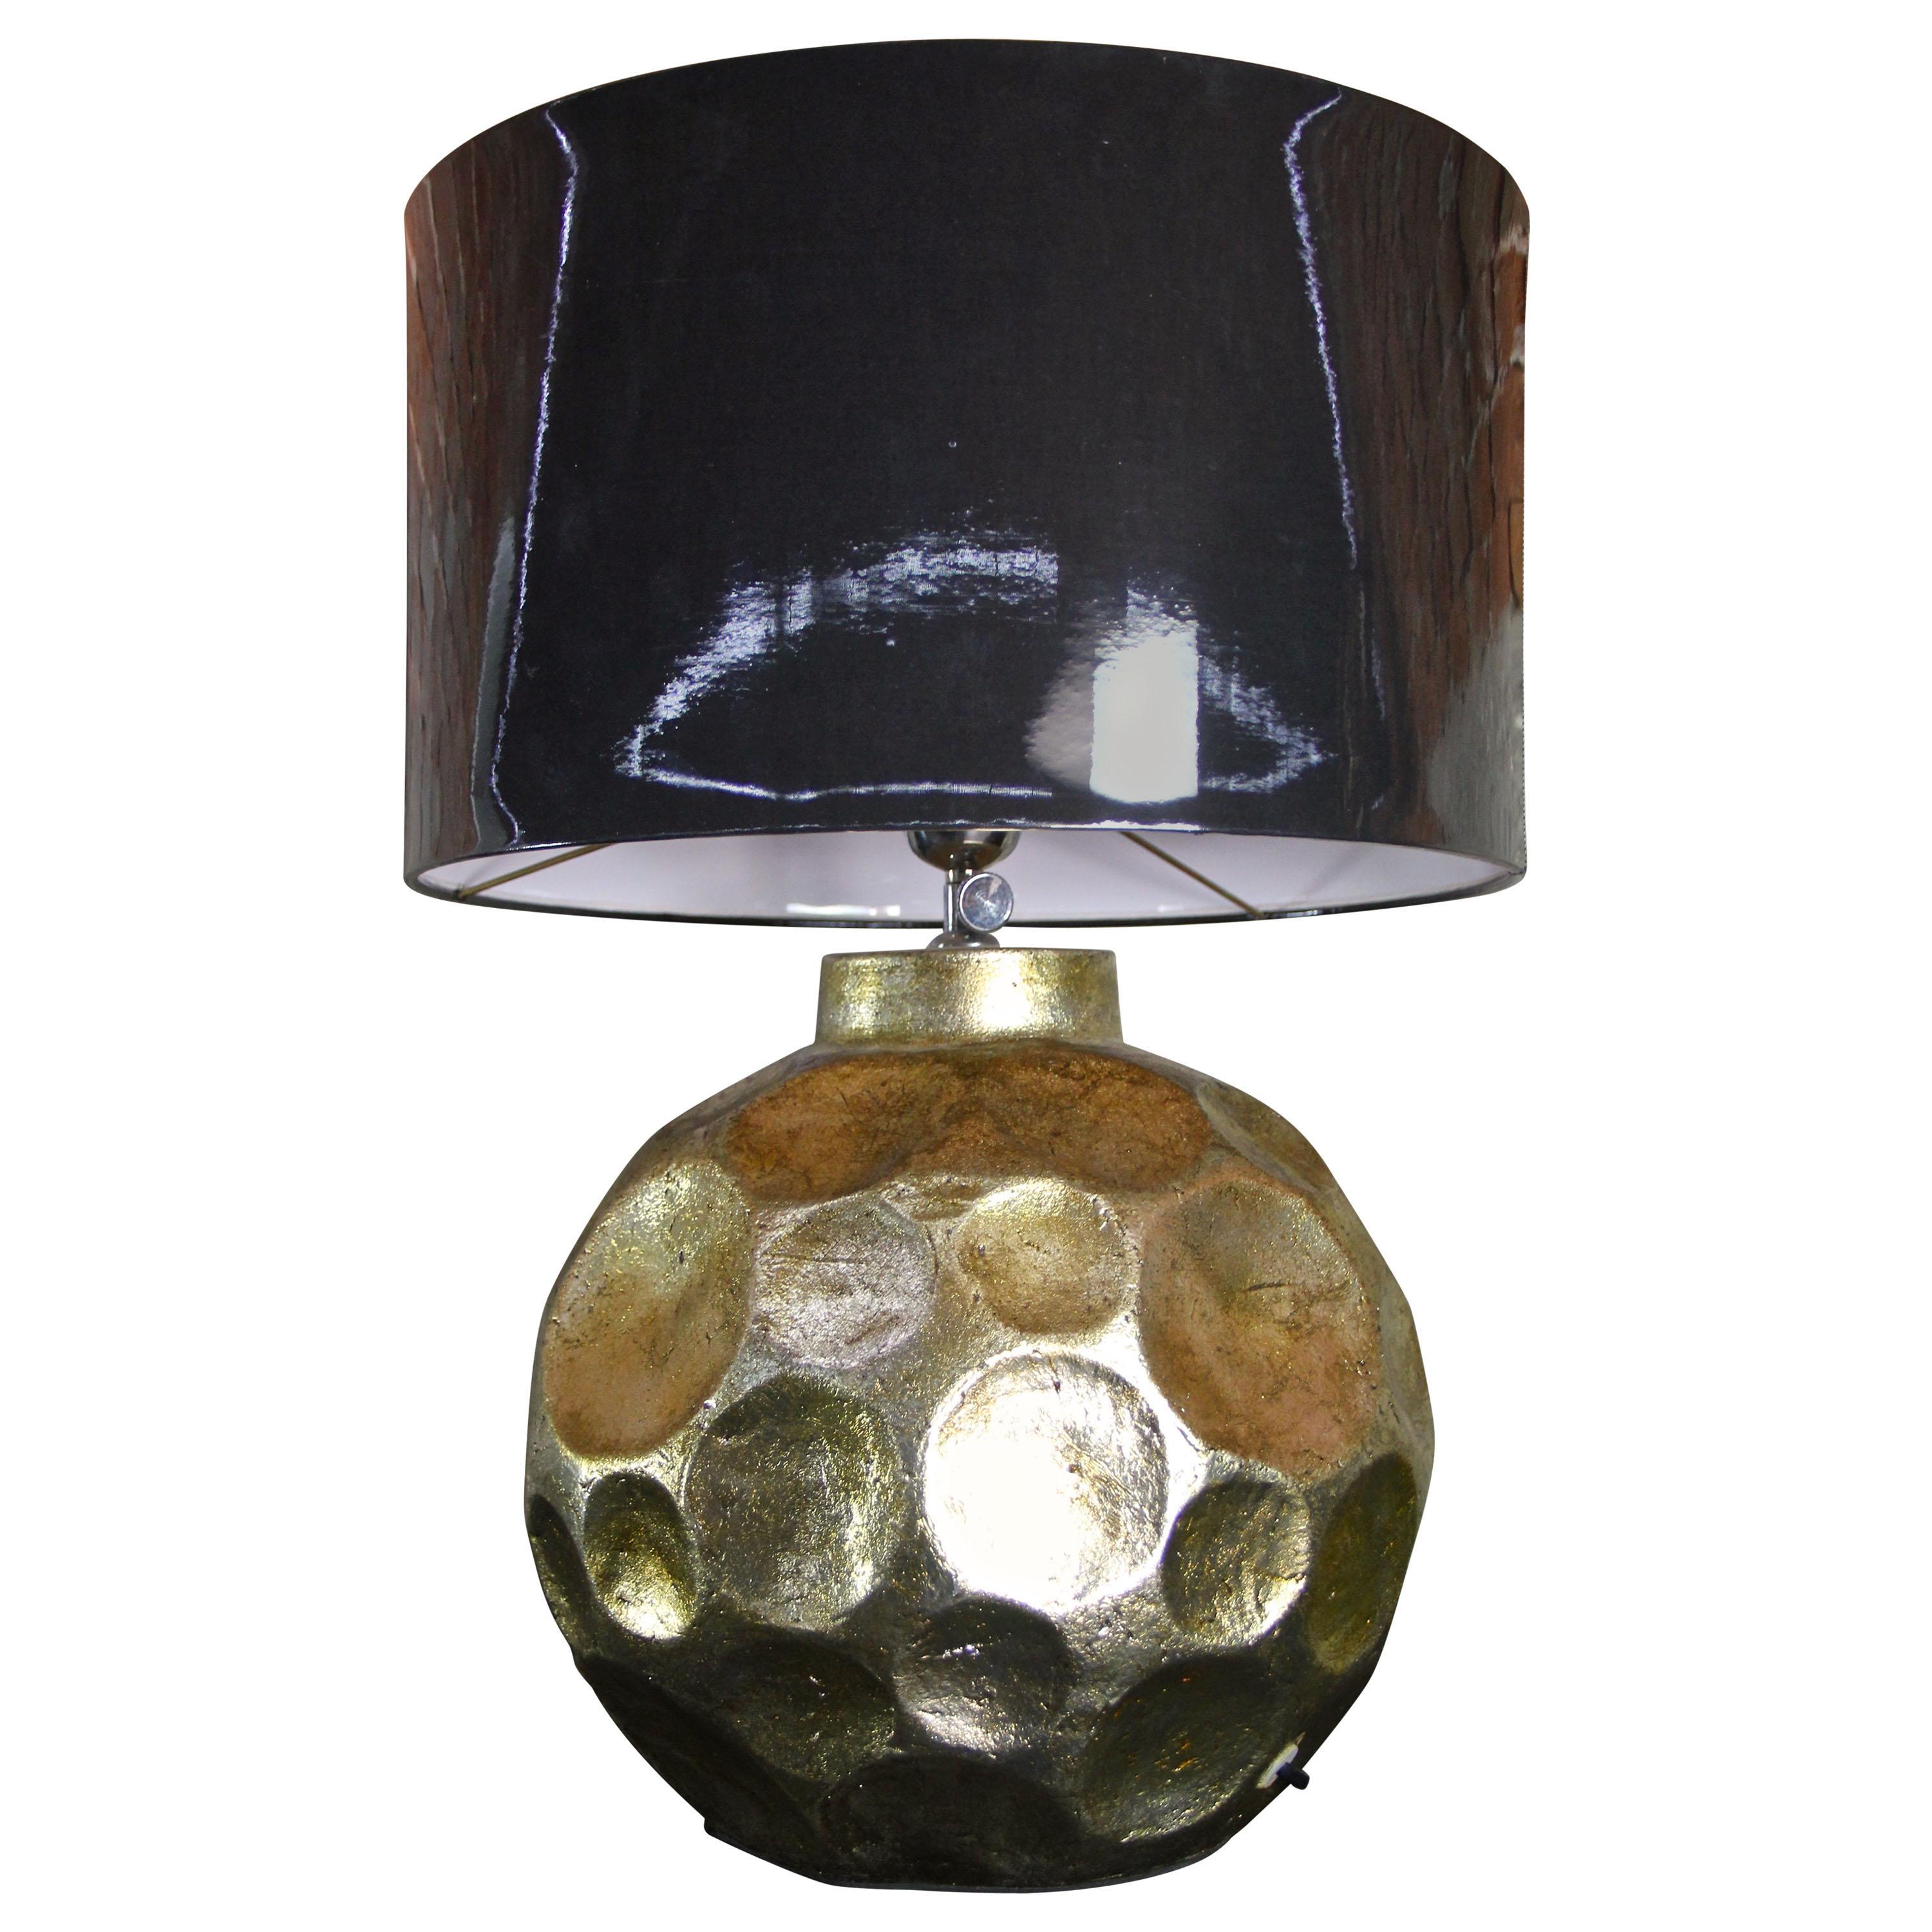 Zeitgenössische Keramik-Tischlampe, gold glasiert mit dunkelgrauem Schirm